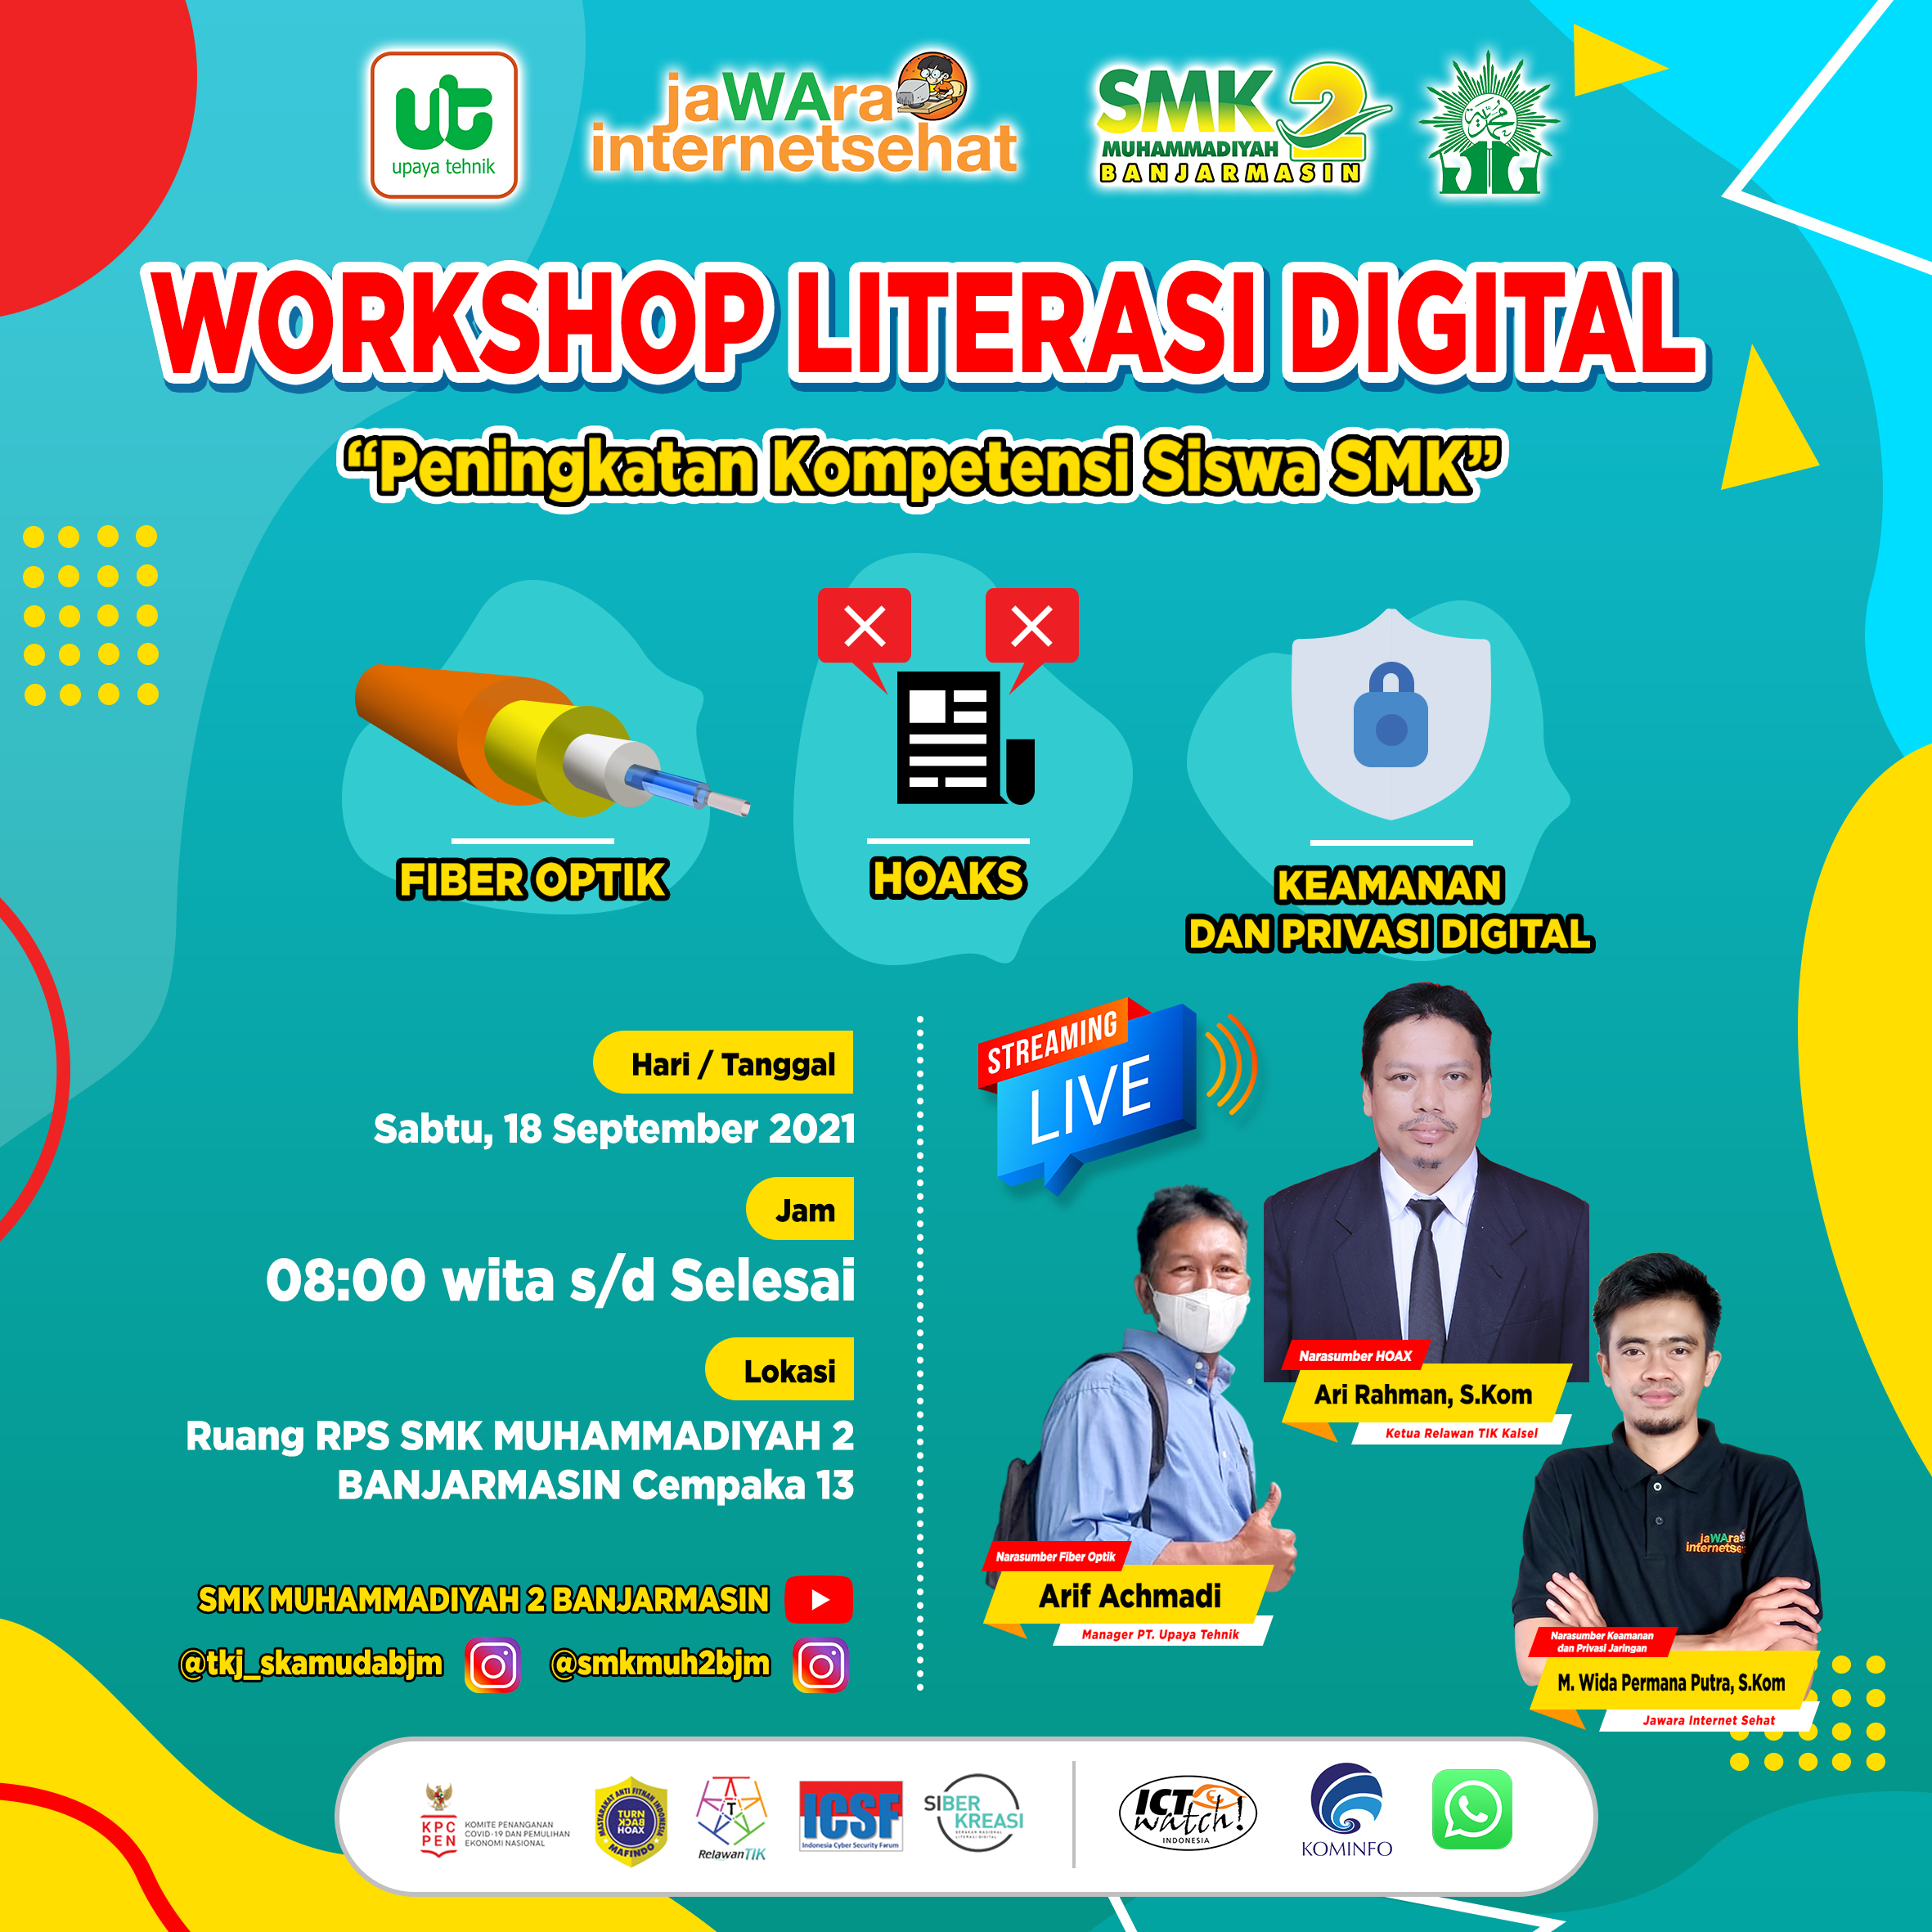 Workshop Literasi Digital “Peningkatan Kompetensi Siswa SMK”